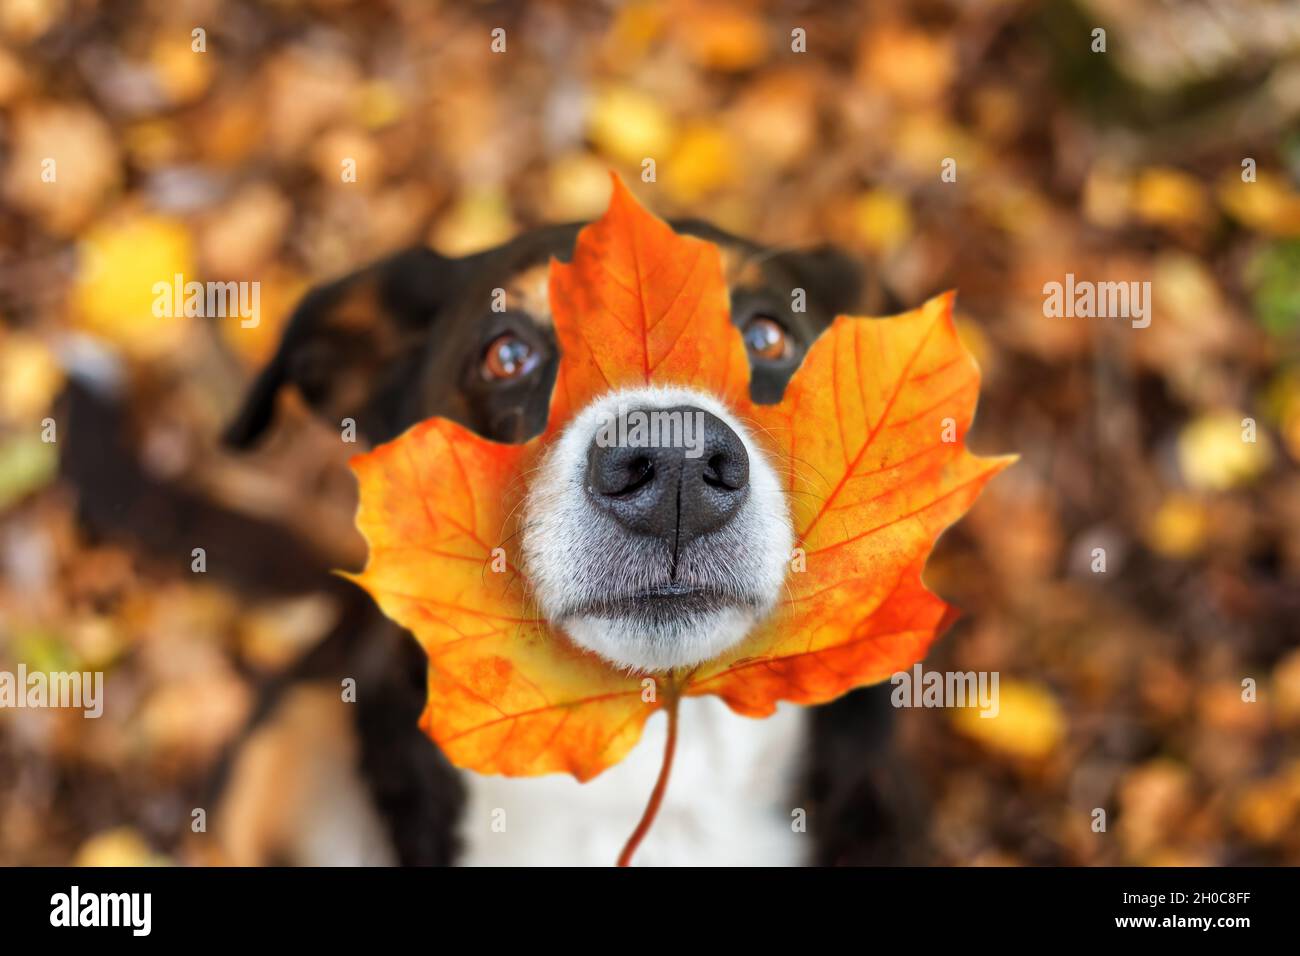 Hund mit Blatt auf der Nase sitzt in Blättern im Herbstpark, appenzeller senhenhund Stockfoto